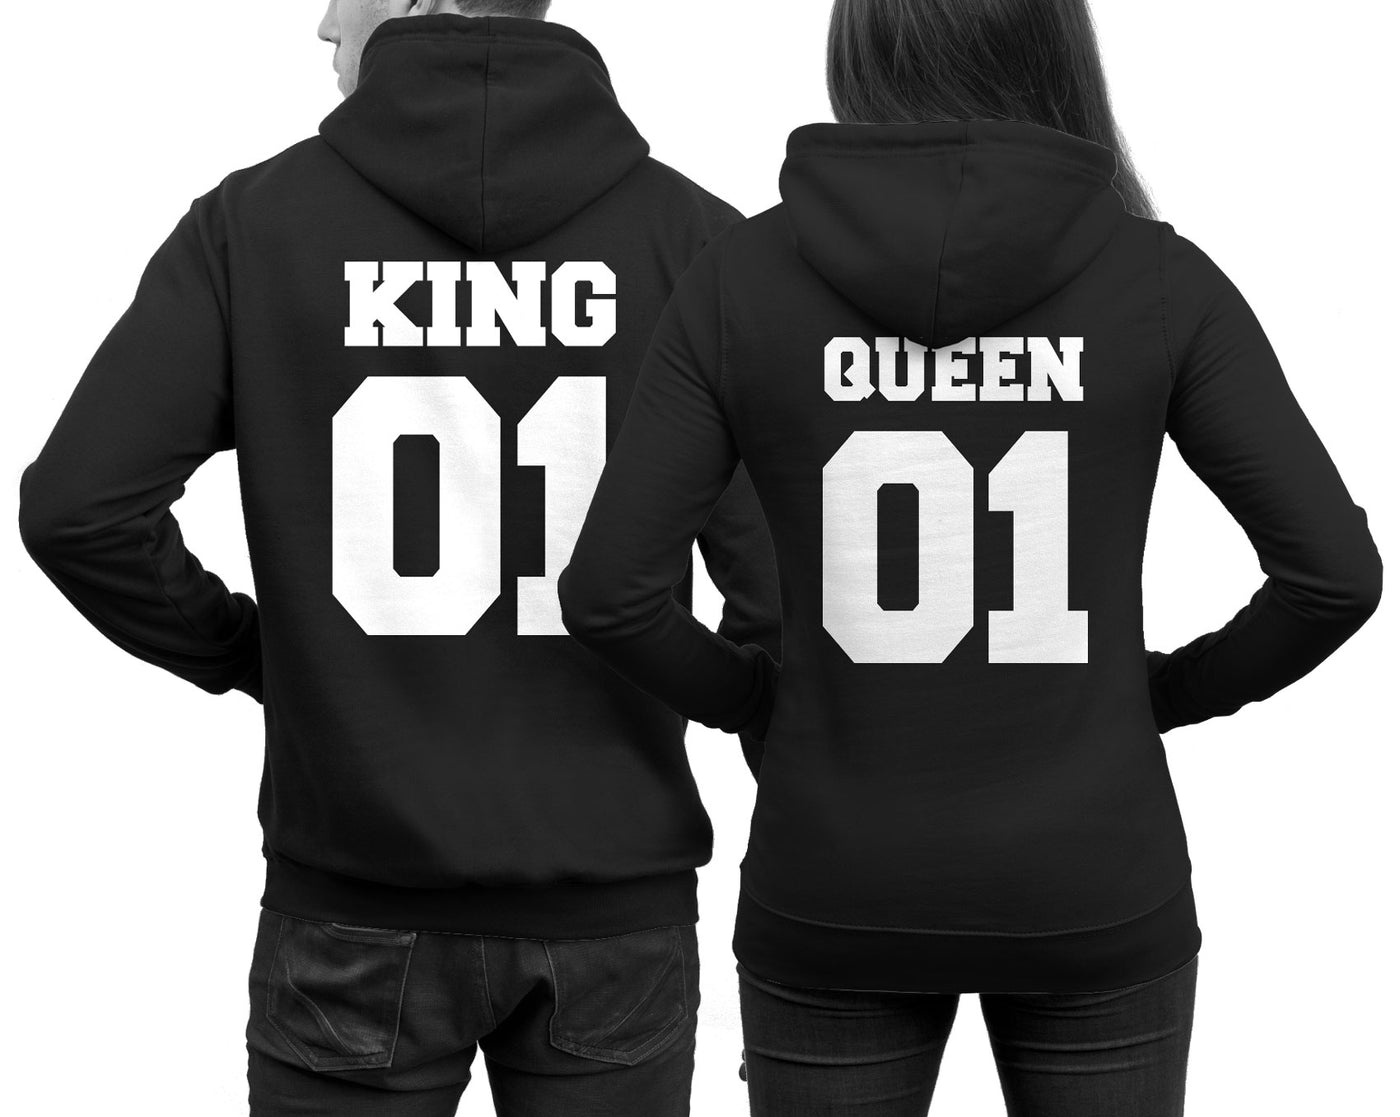 king_queen_hoodie_set_blk